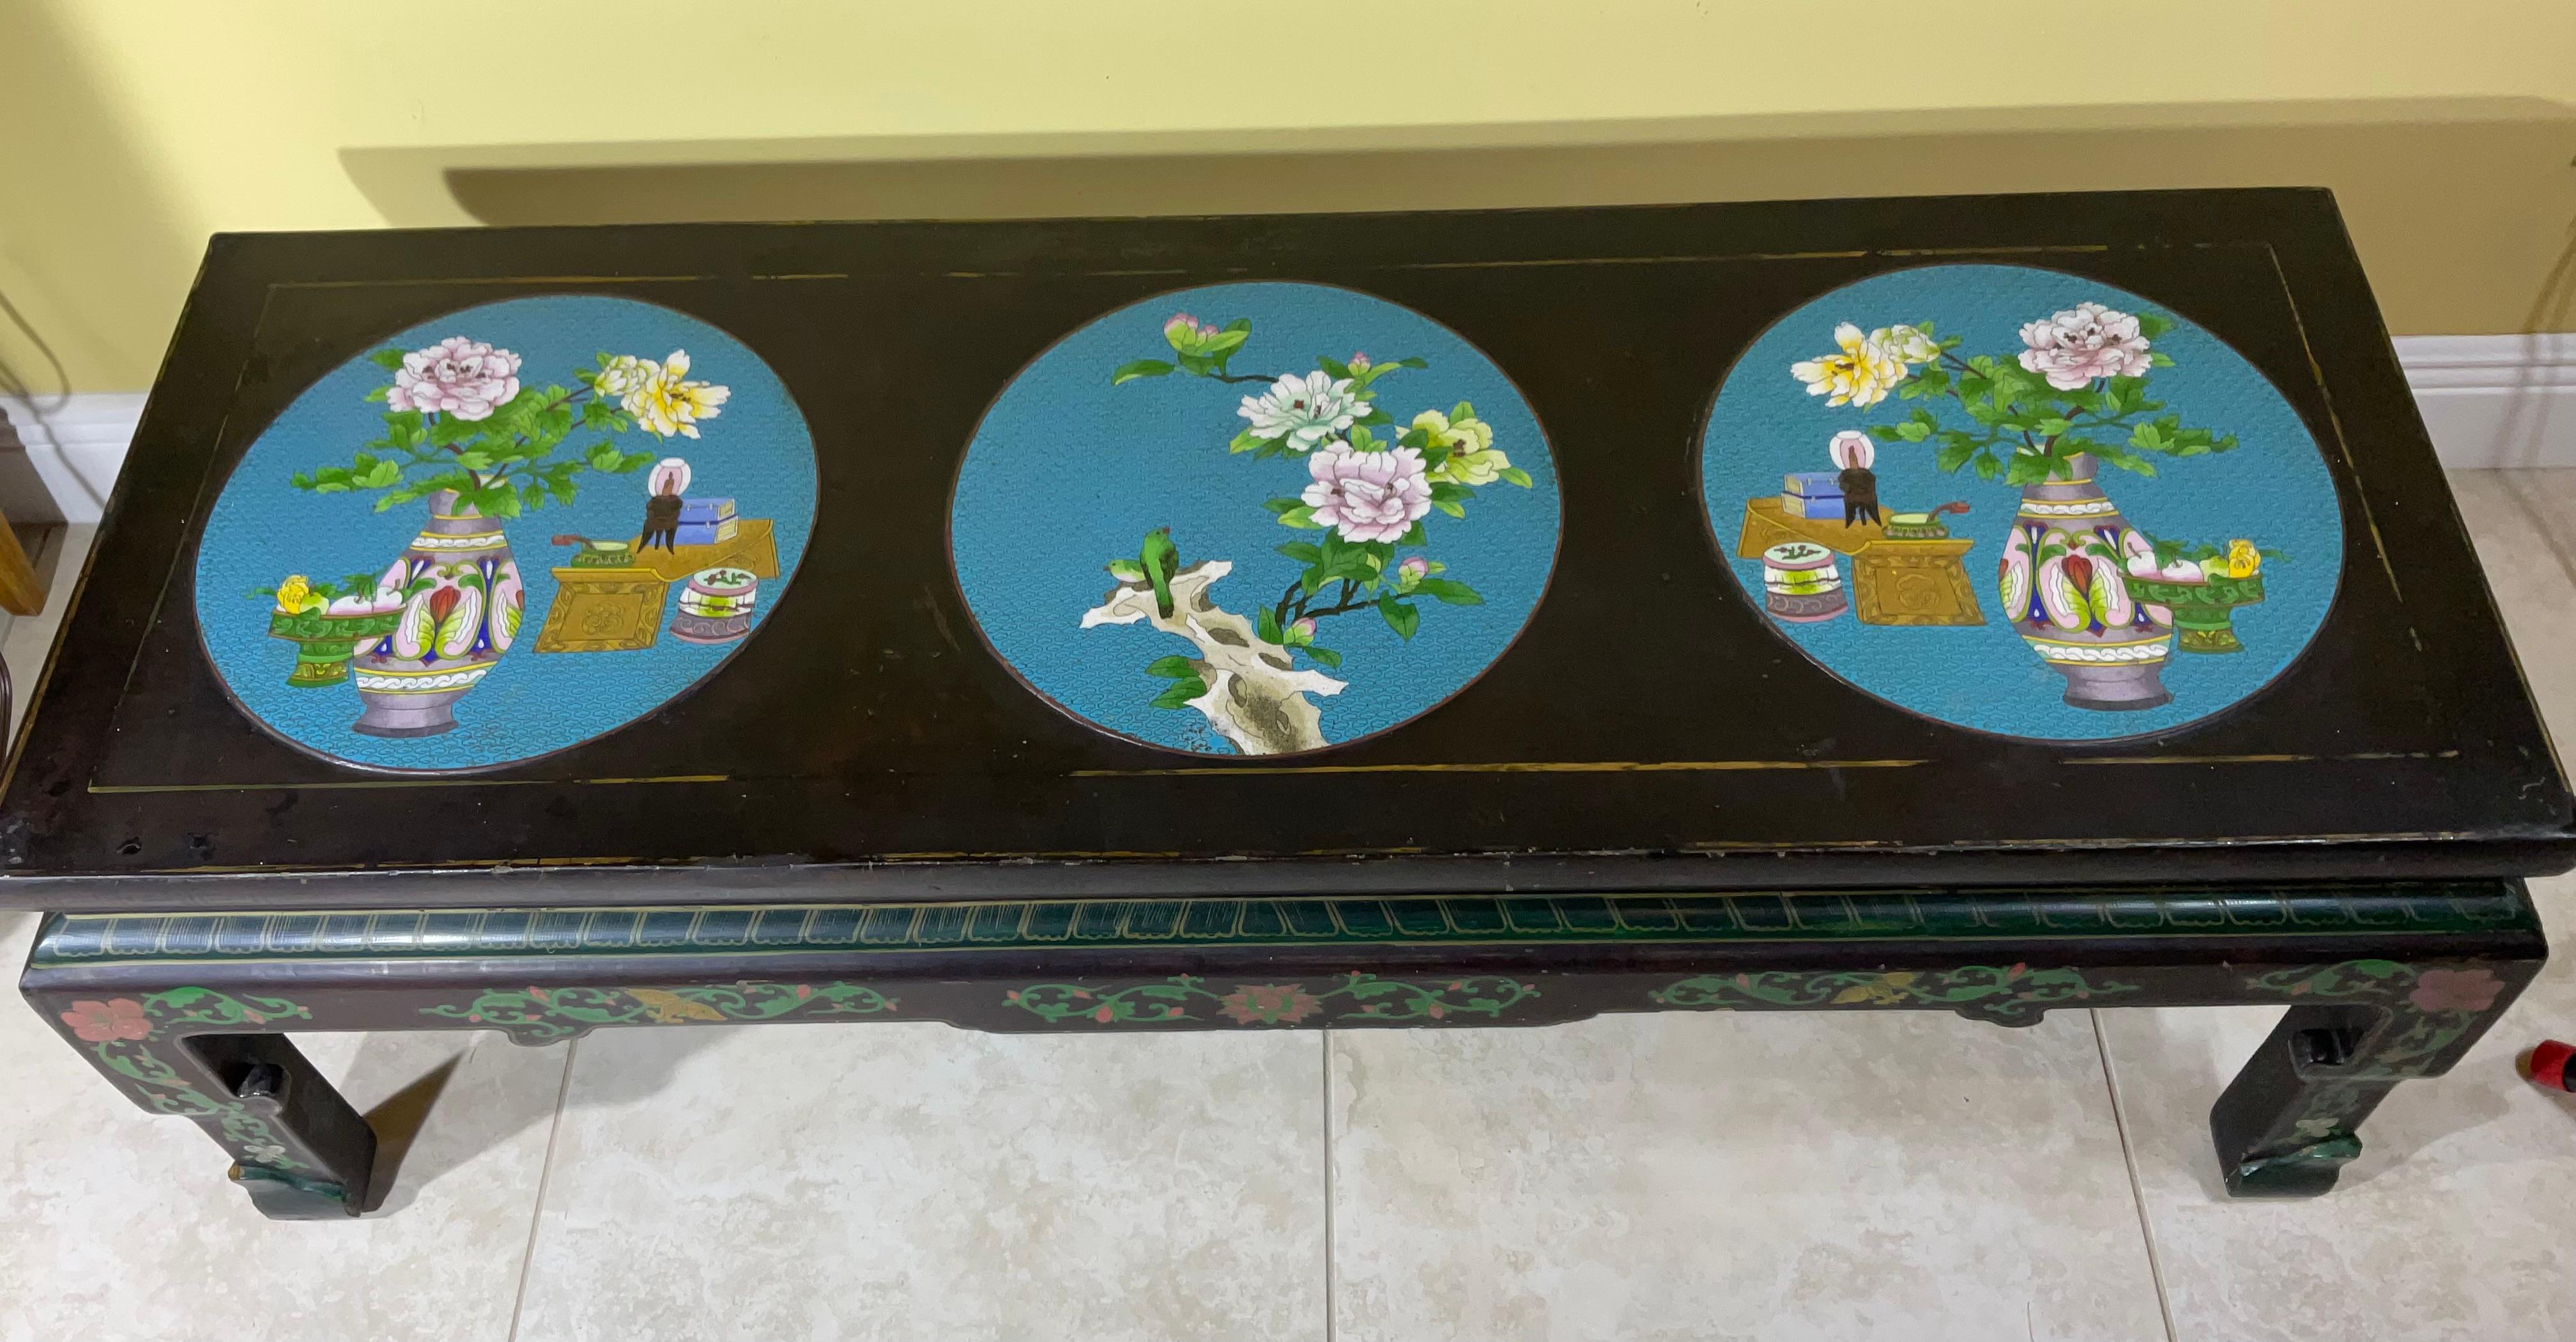 Table basse chinoise en laque noire avec trois grands cercles turquoise cloisonnés sur le dessus, représentant des fleurs, des oiseaux et un décor de jardin.  Les quatre côtés de la table sont joliment peints à la main et la table est très solide,